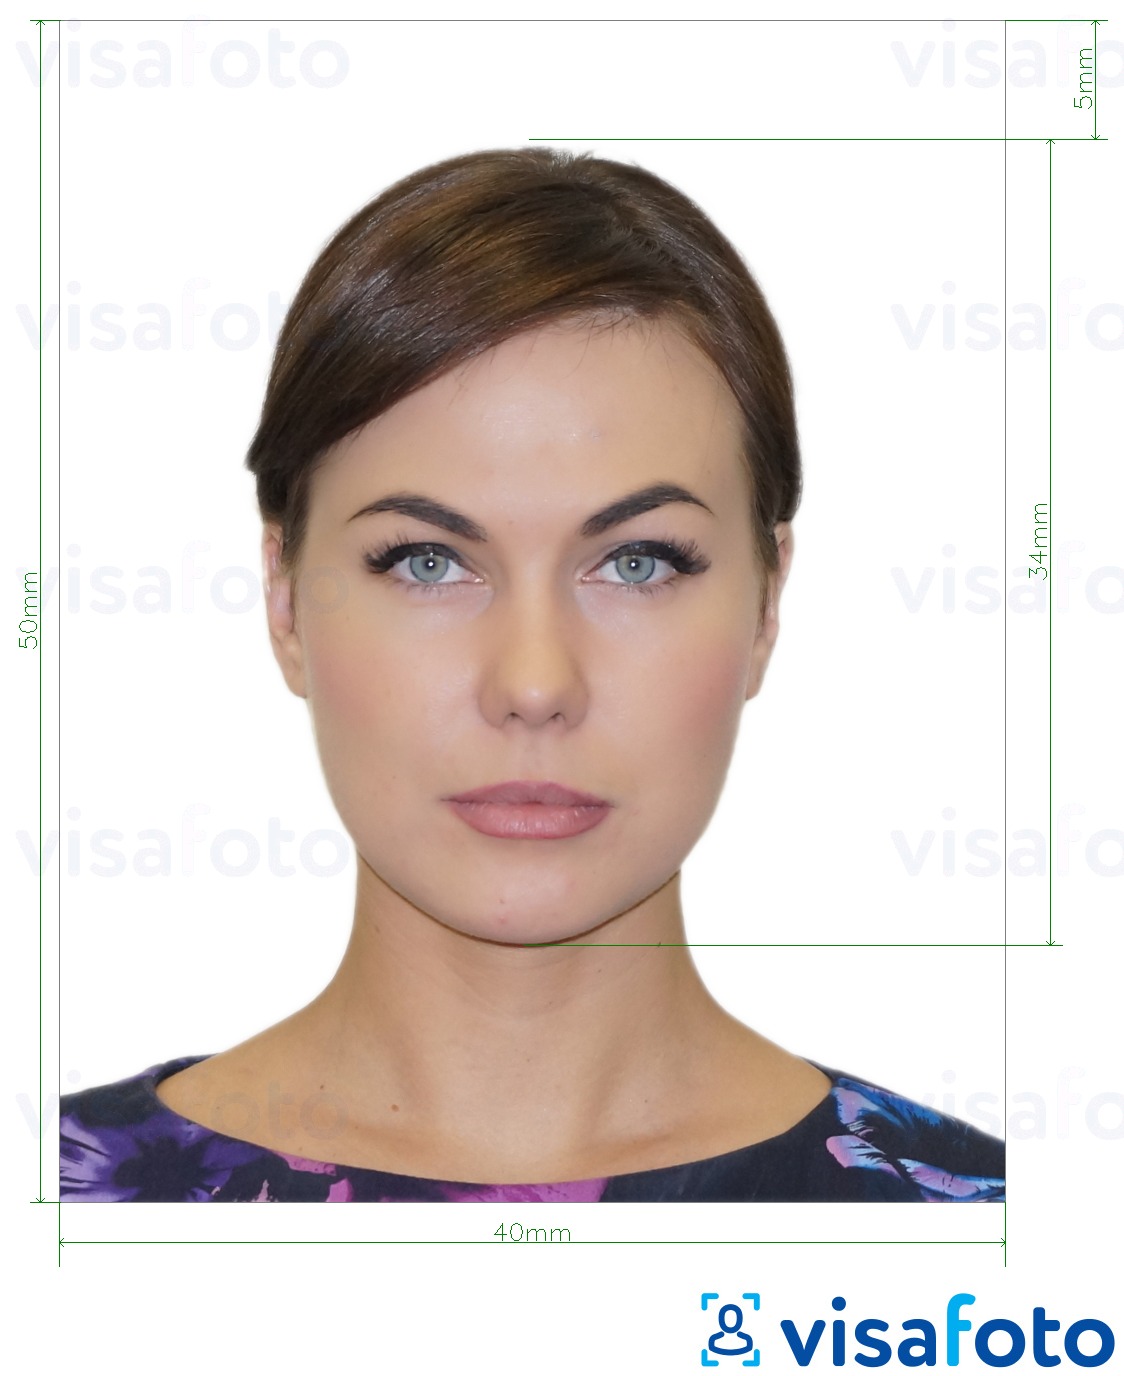 Príklad fotografie pre Albánsko elektronické vízum 4x5 cm s presnou špecifikáciou veľkosti